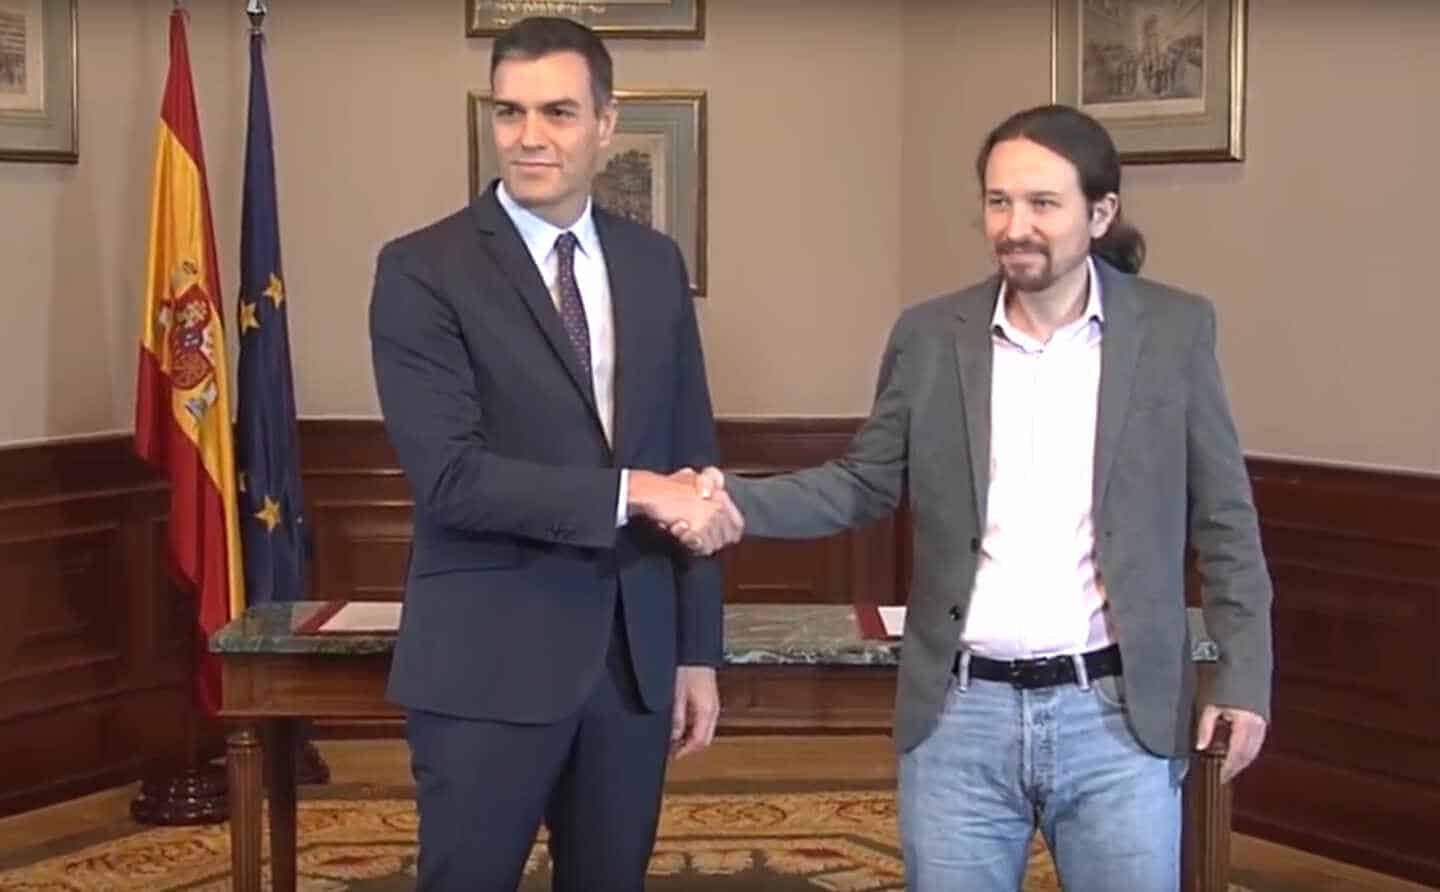 ENCUESTA | ¿Considera positivo el acuerdo de gobierno entre PSOE y Podemos?